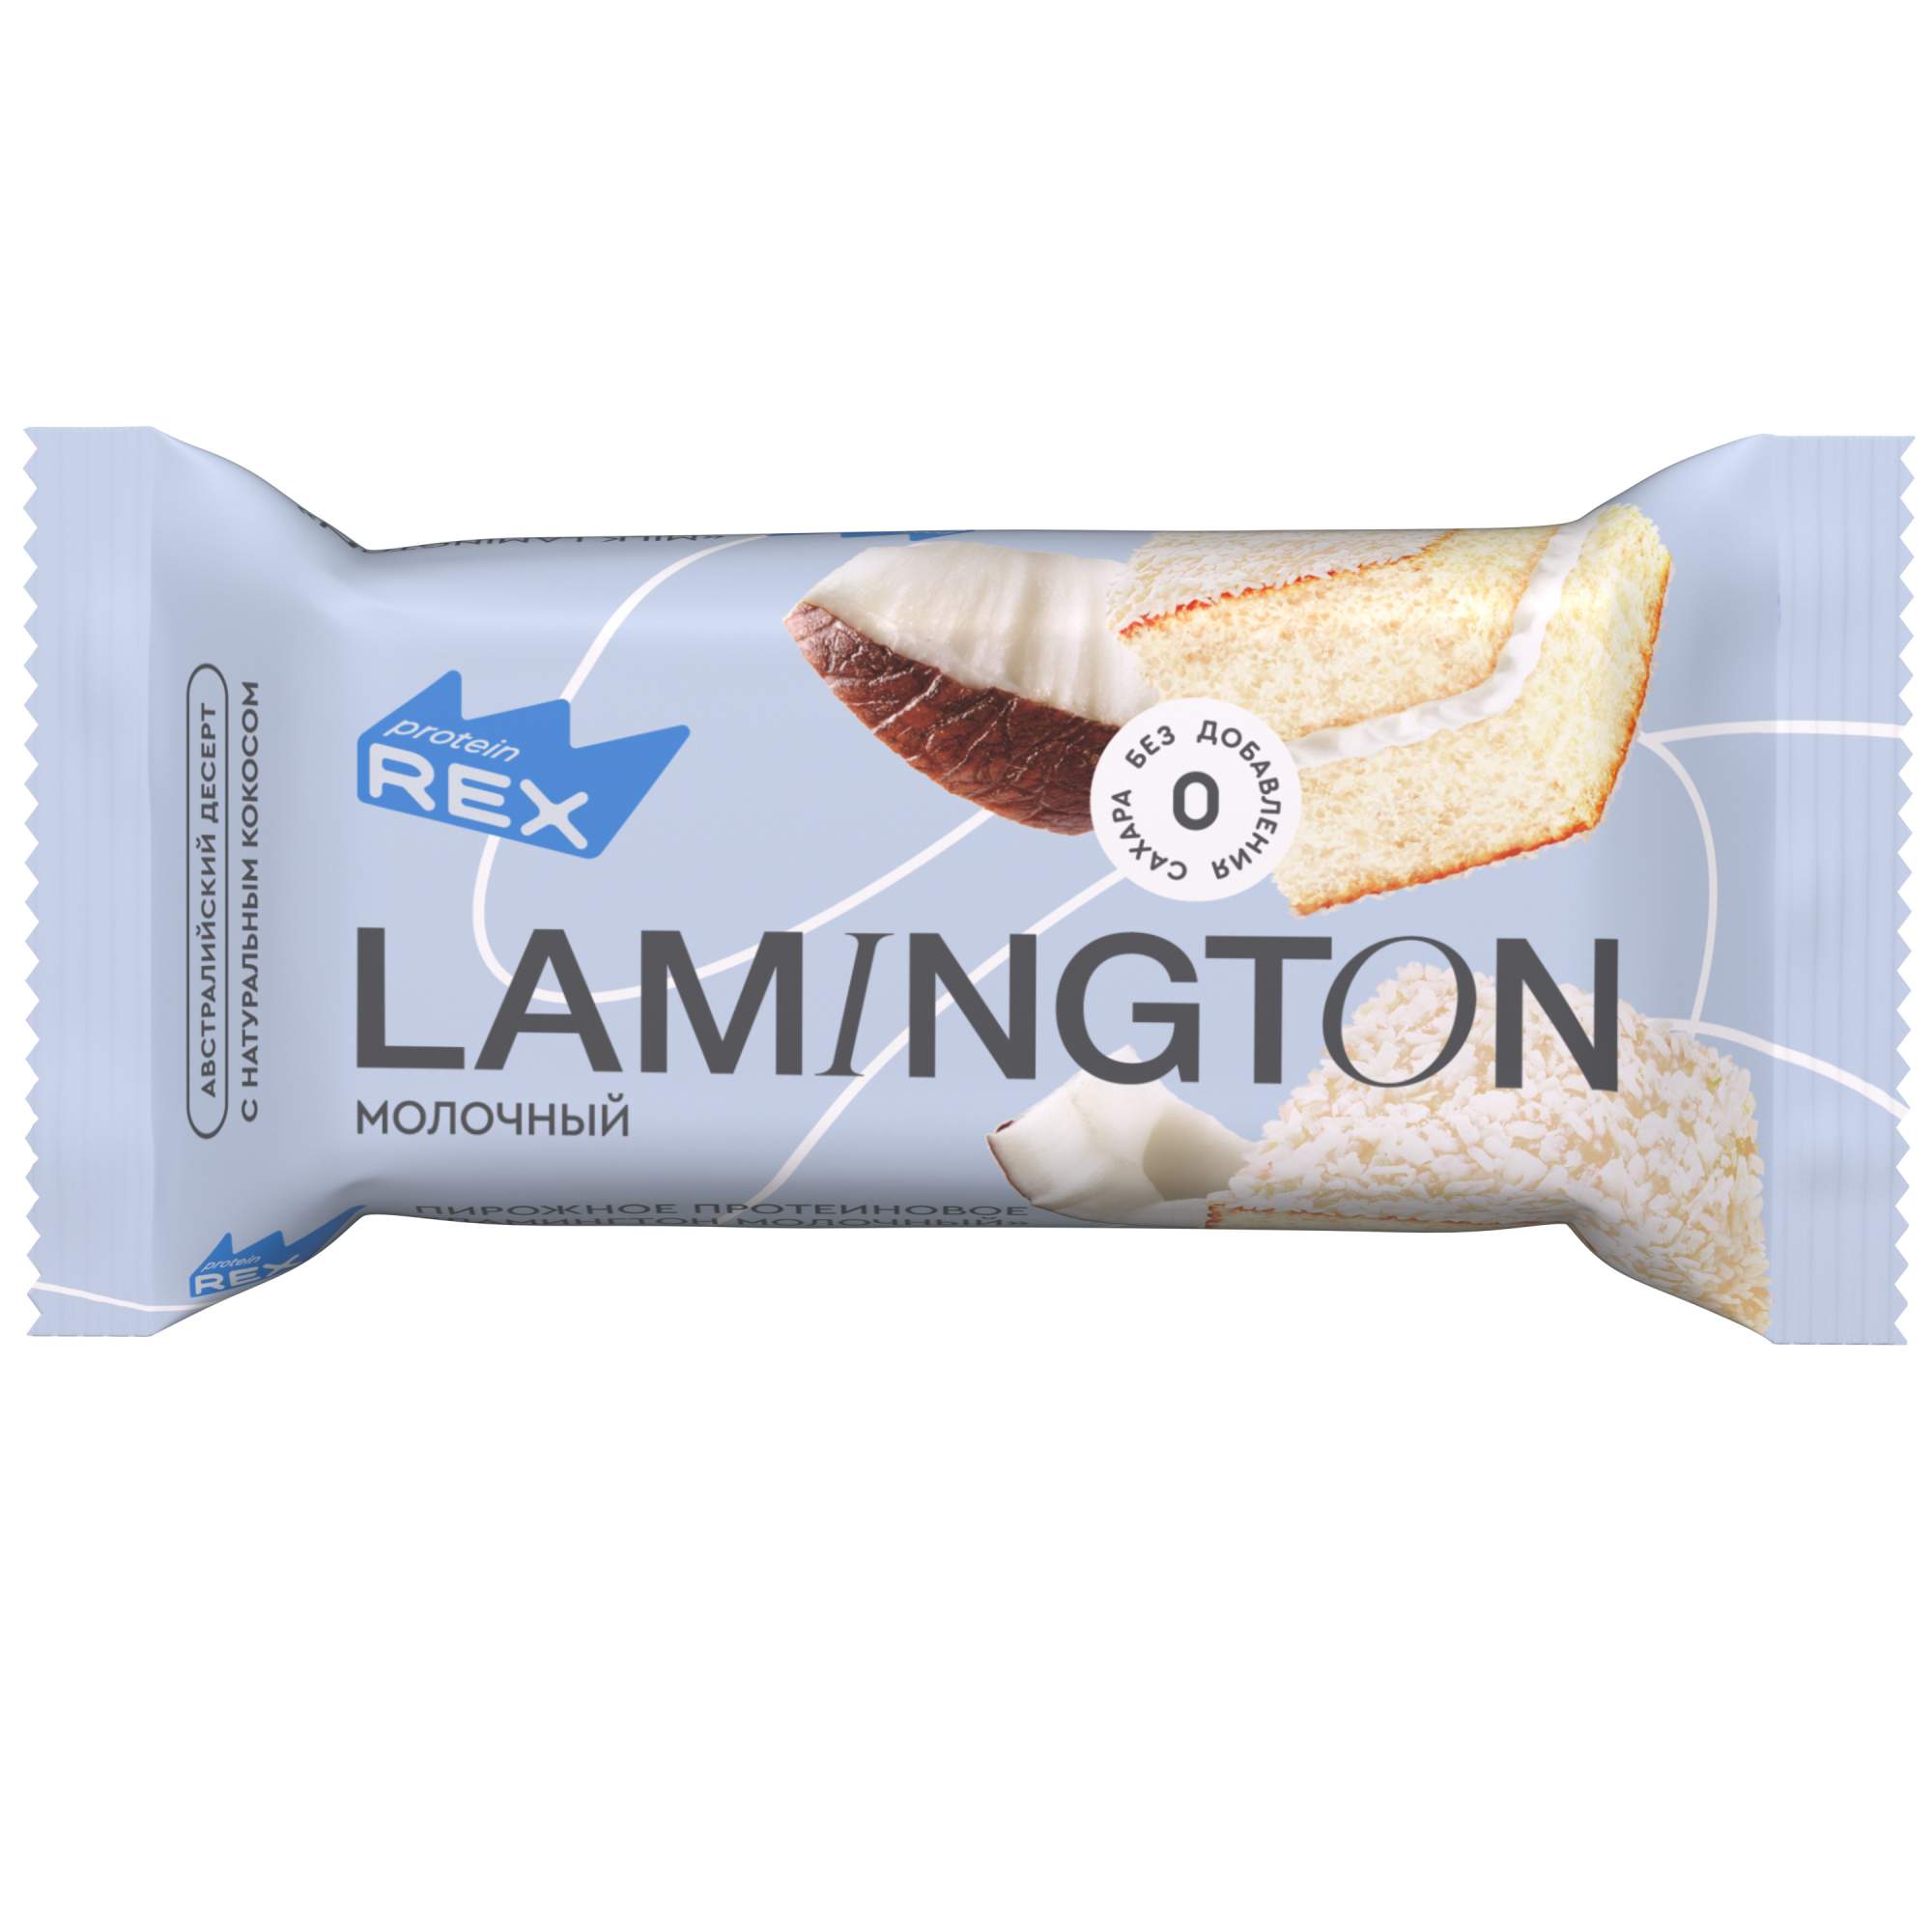 Купить пирожное ProteinRex Lamington протеиновое, молочный, 50 г, цены на Мегамаркет | Артикул: 100029461802